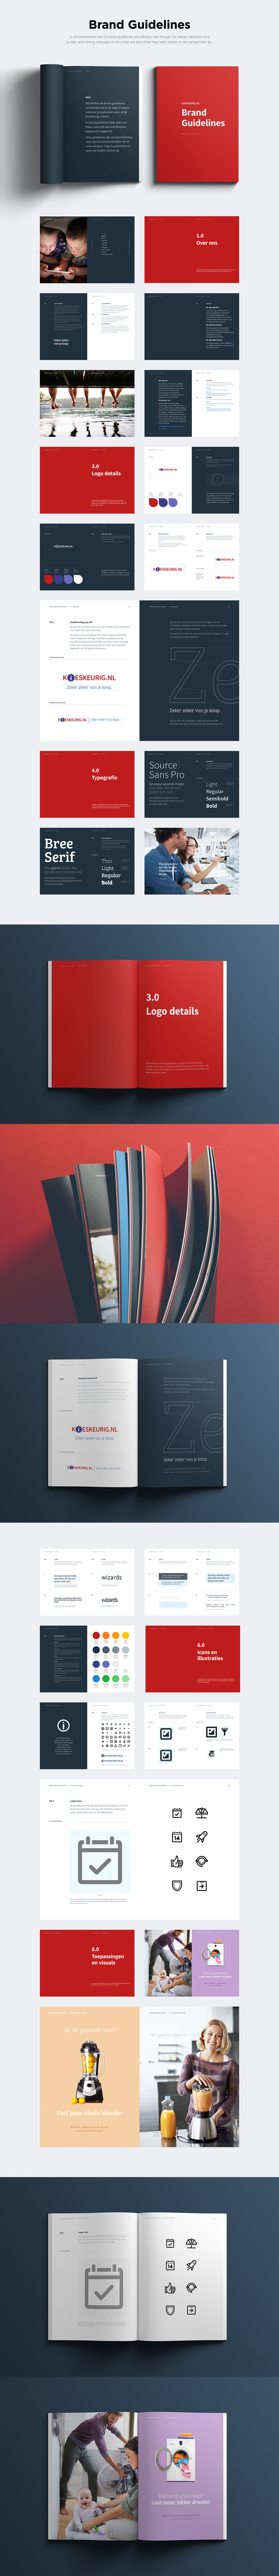 brand guidelines branding  book design kieskeurig commerce